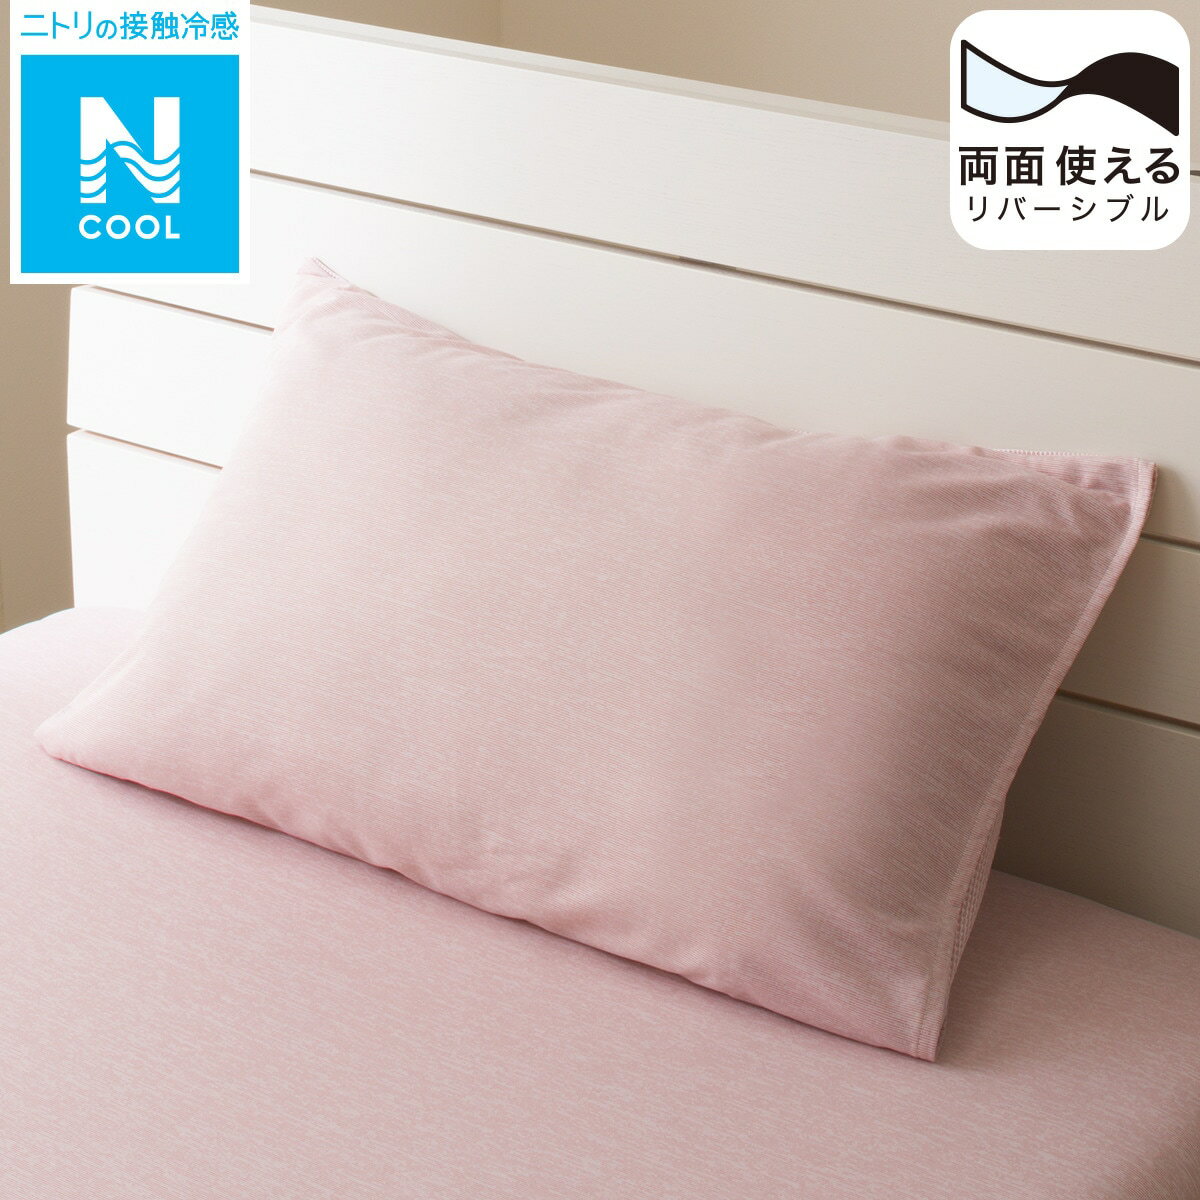 ニトリの枕カバー (Nクール RO 23NC-01)   【1年保証】(布団・寝具)